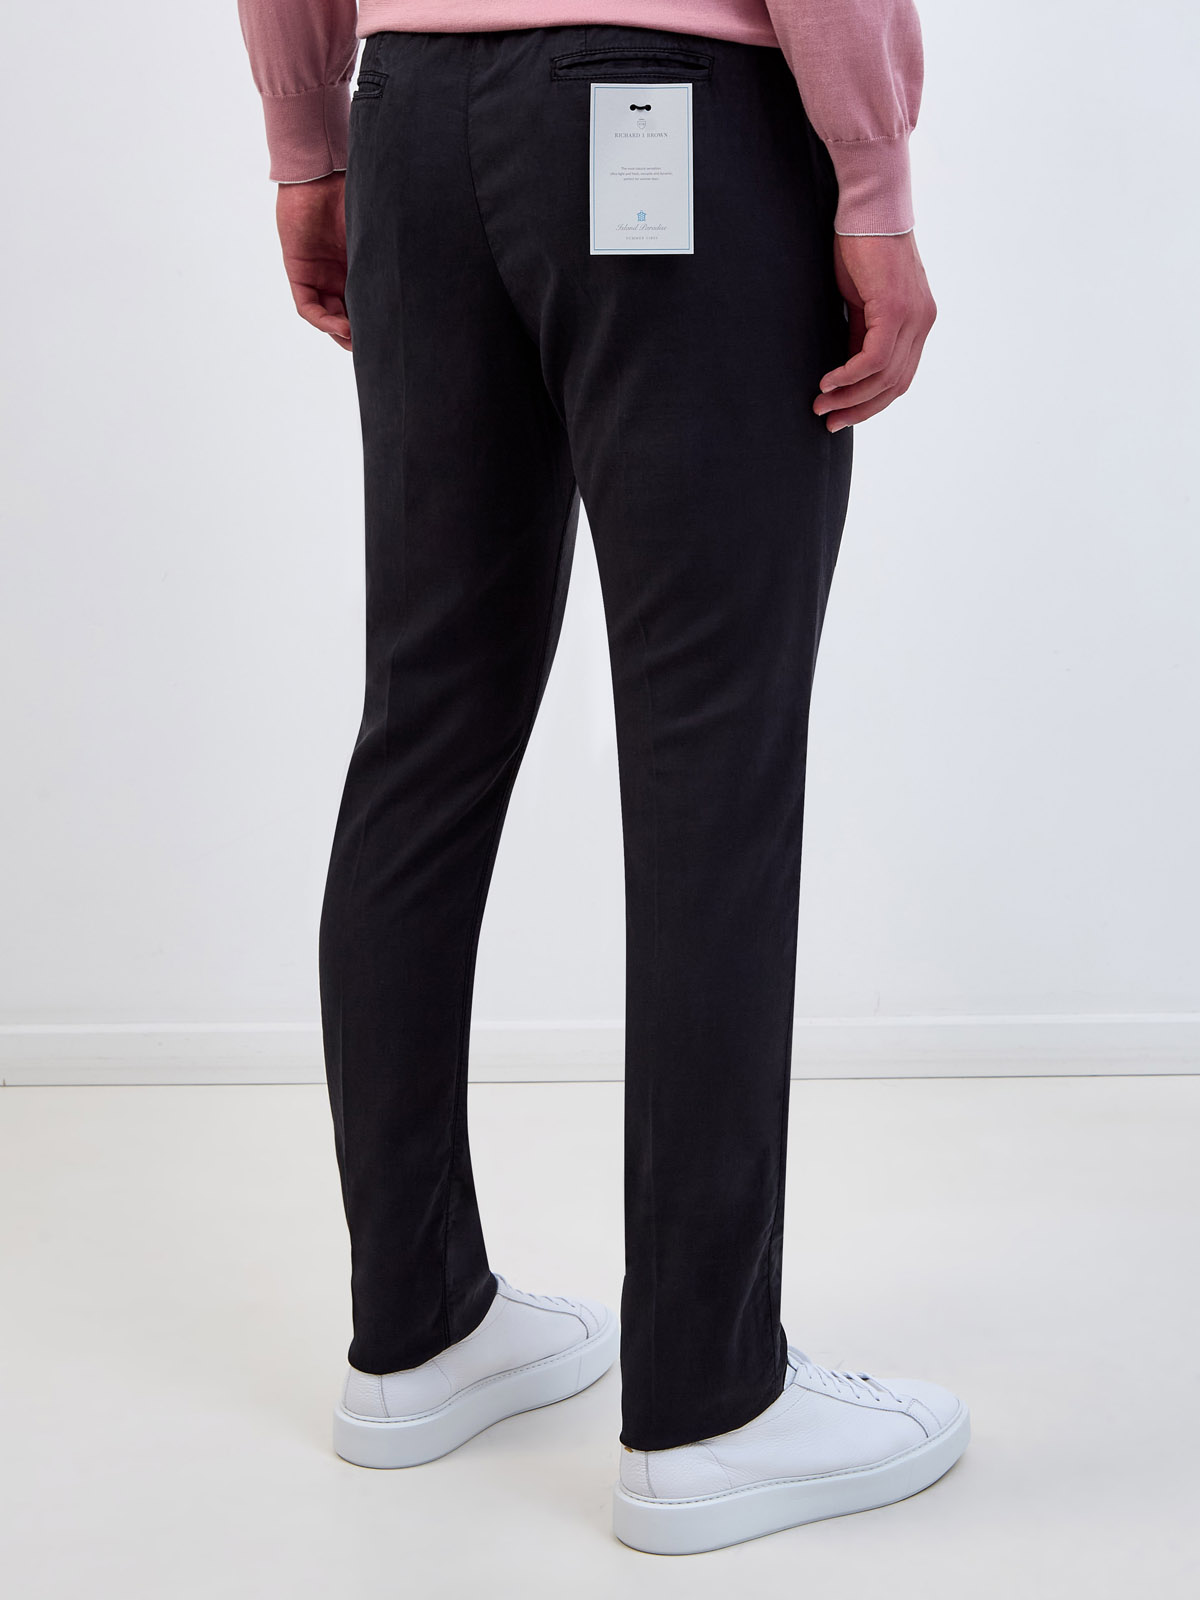 Легкие брюки из лиоцелла, хлопка и льна с поясом на кулиске RICHARD J. BROWN, цвет черный, размер 44;46;48;50;52;54;54;58 - фото 4